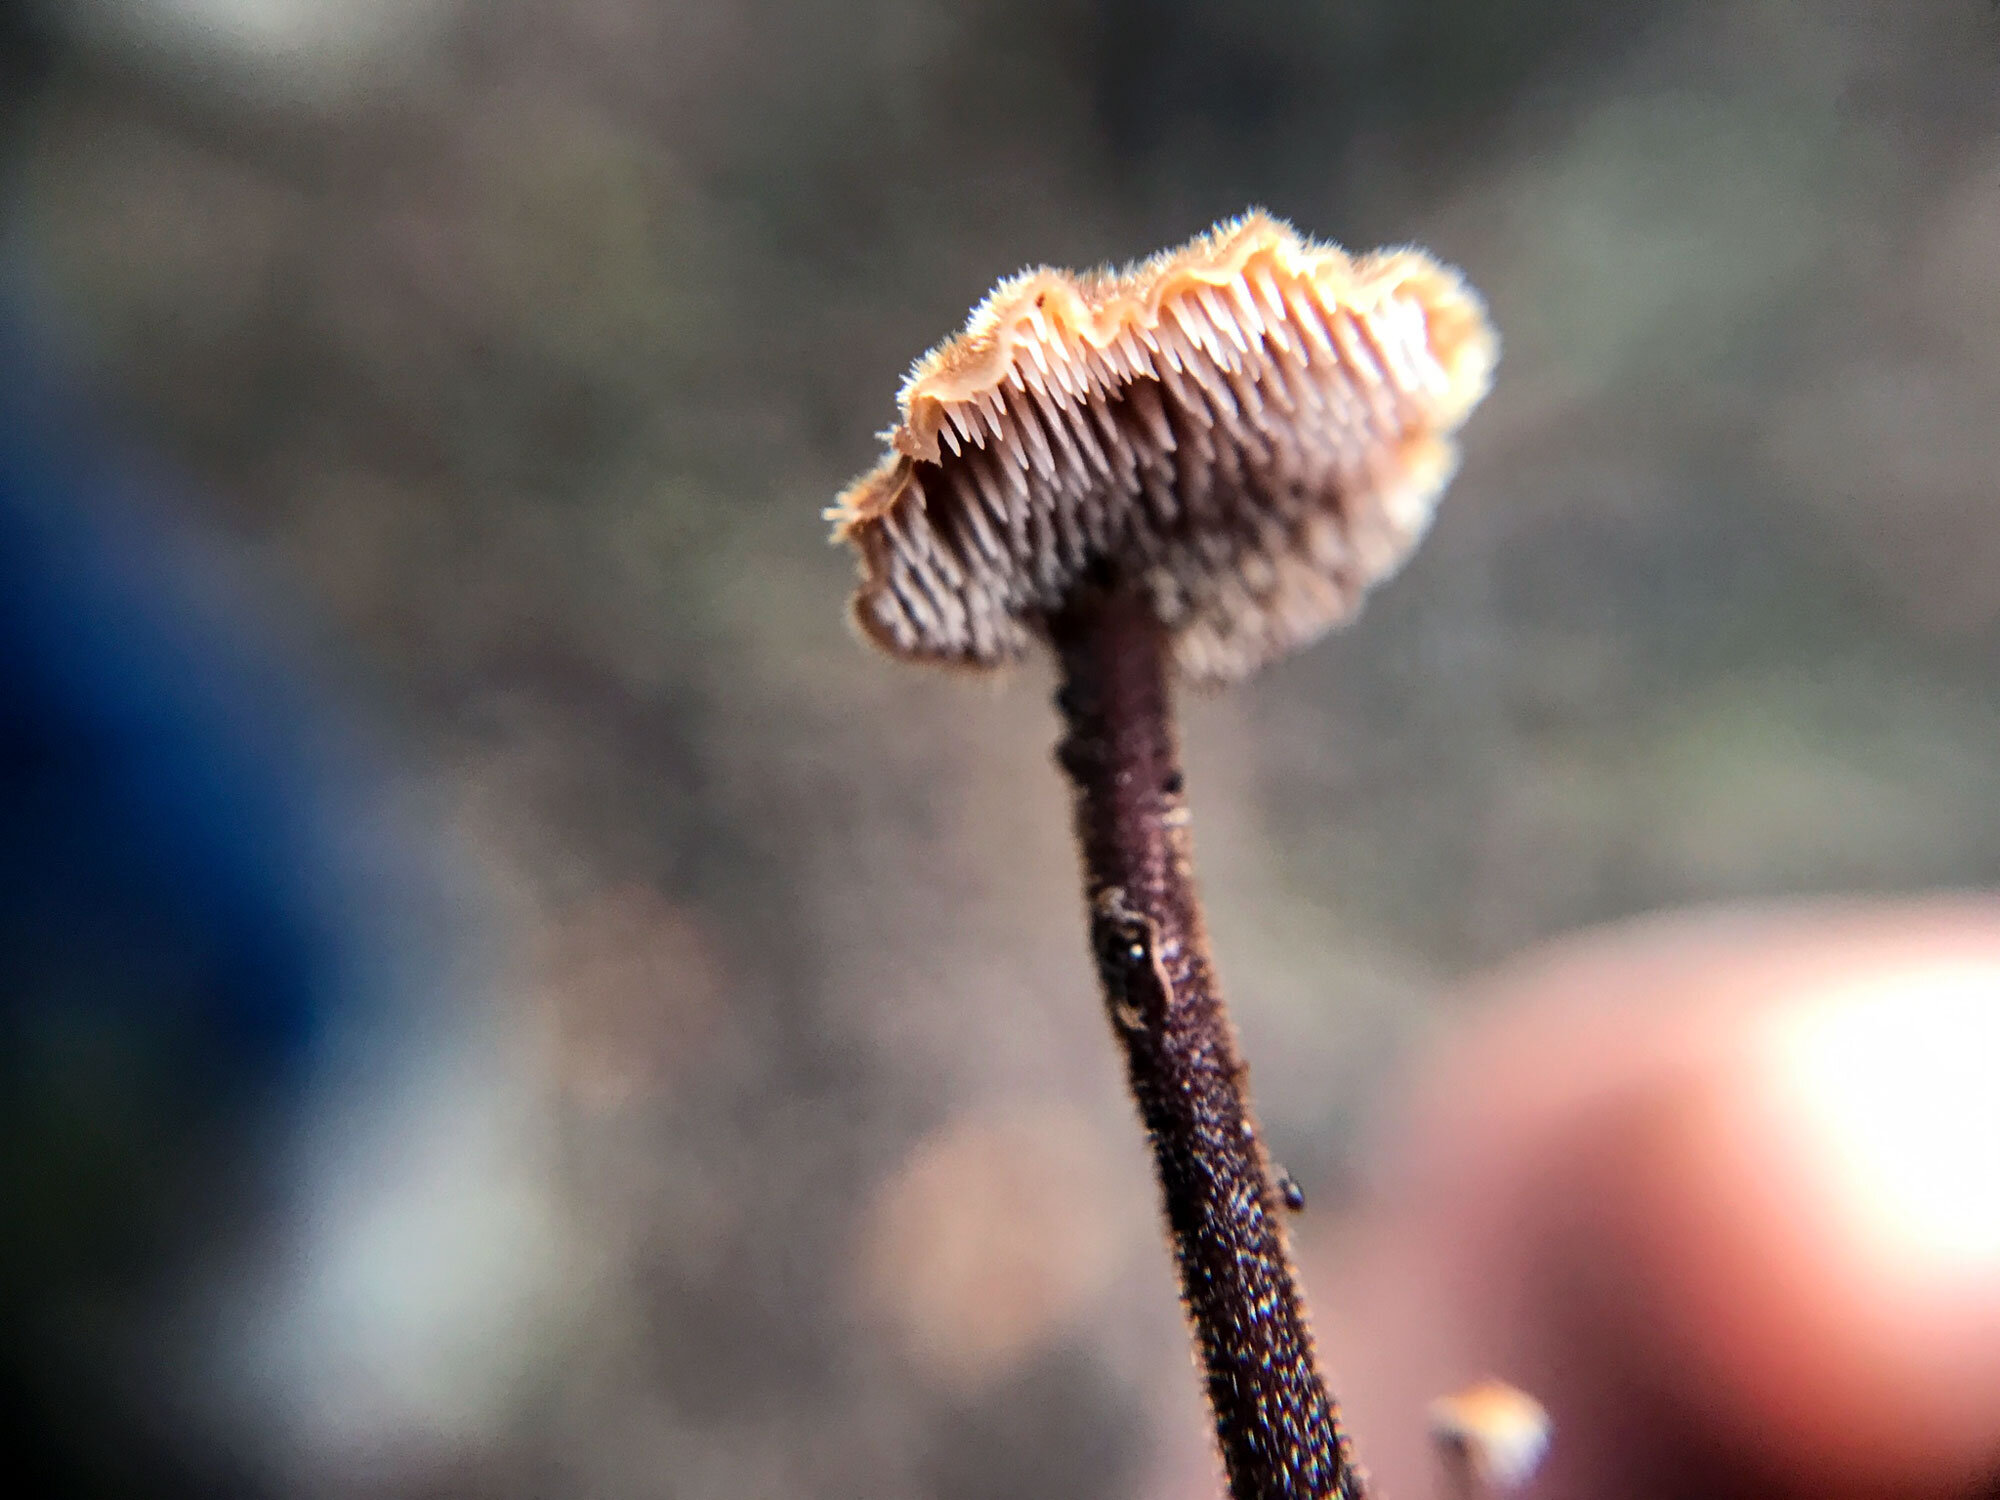 Earpick Fungus (Auriscalpium vulgare)